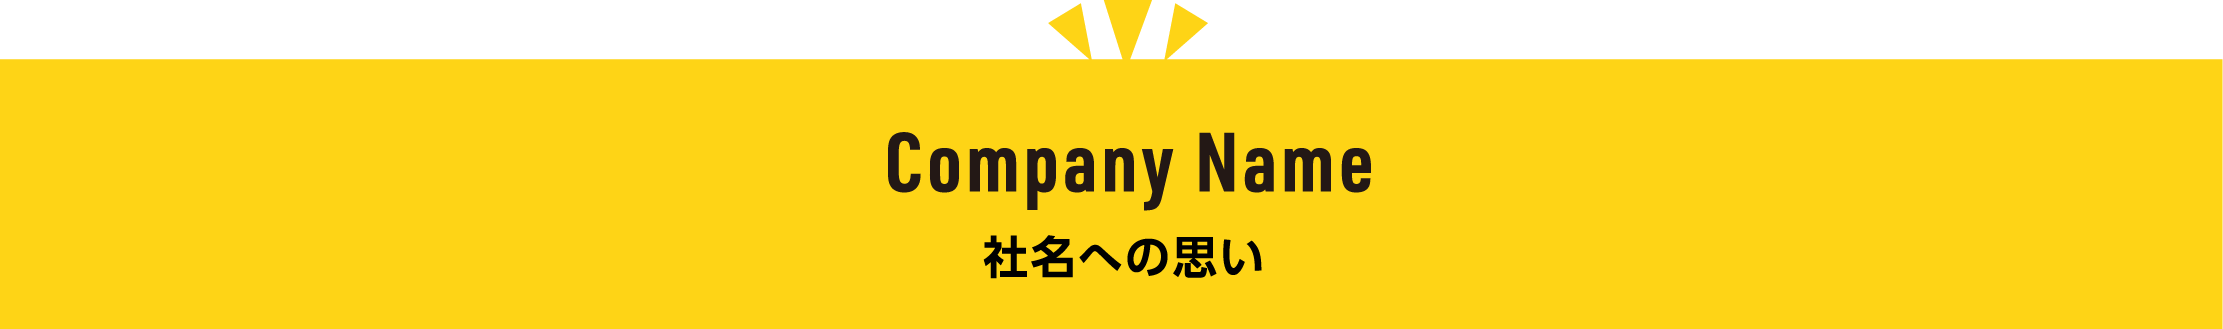 Company Name 社名への思い